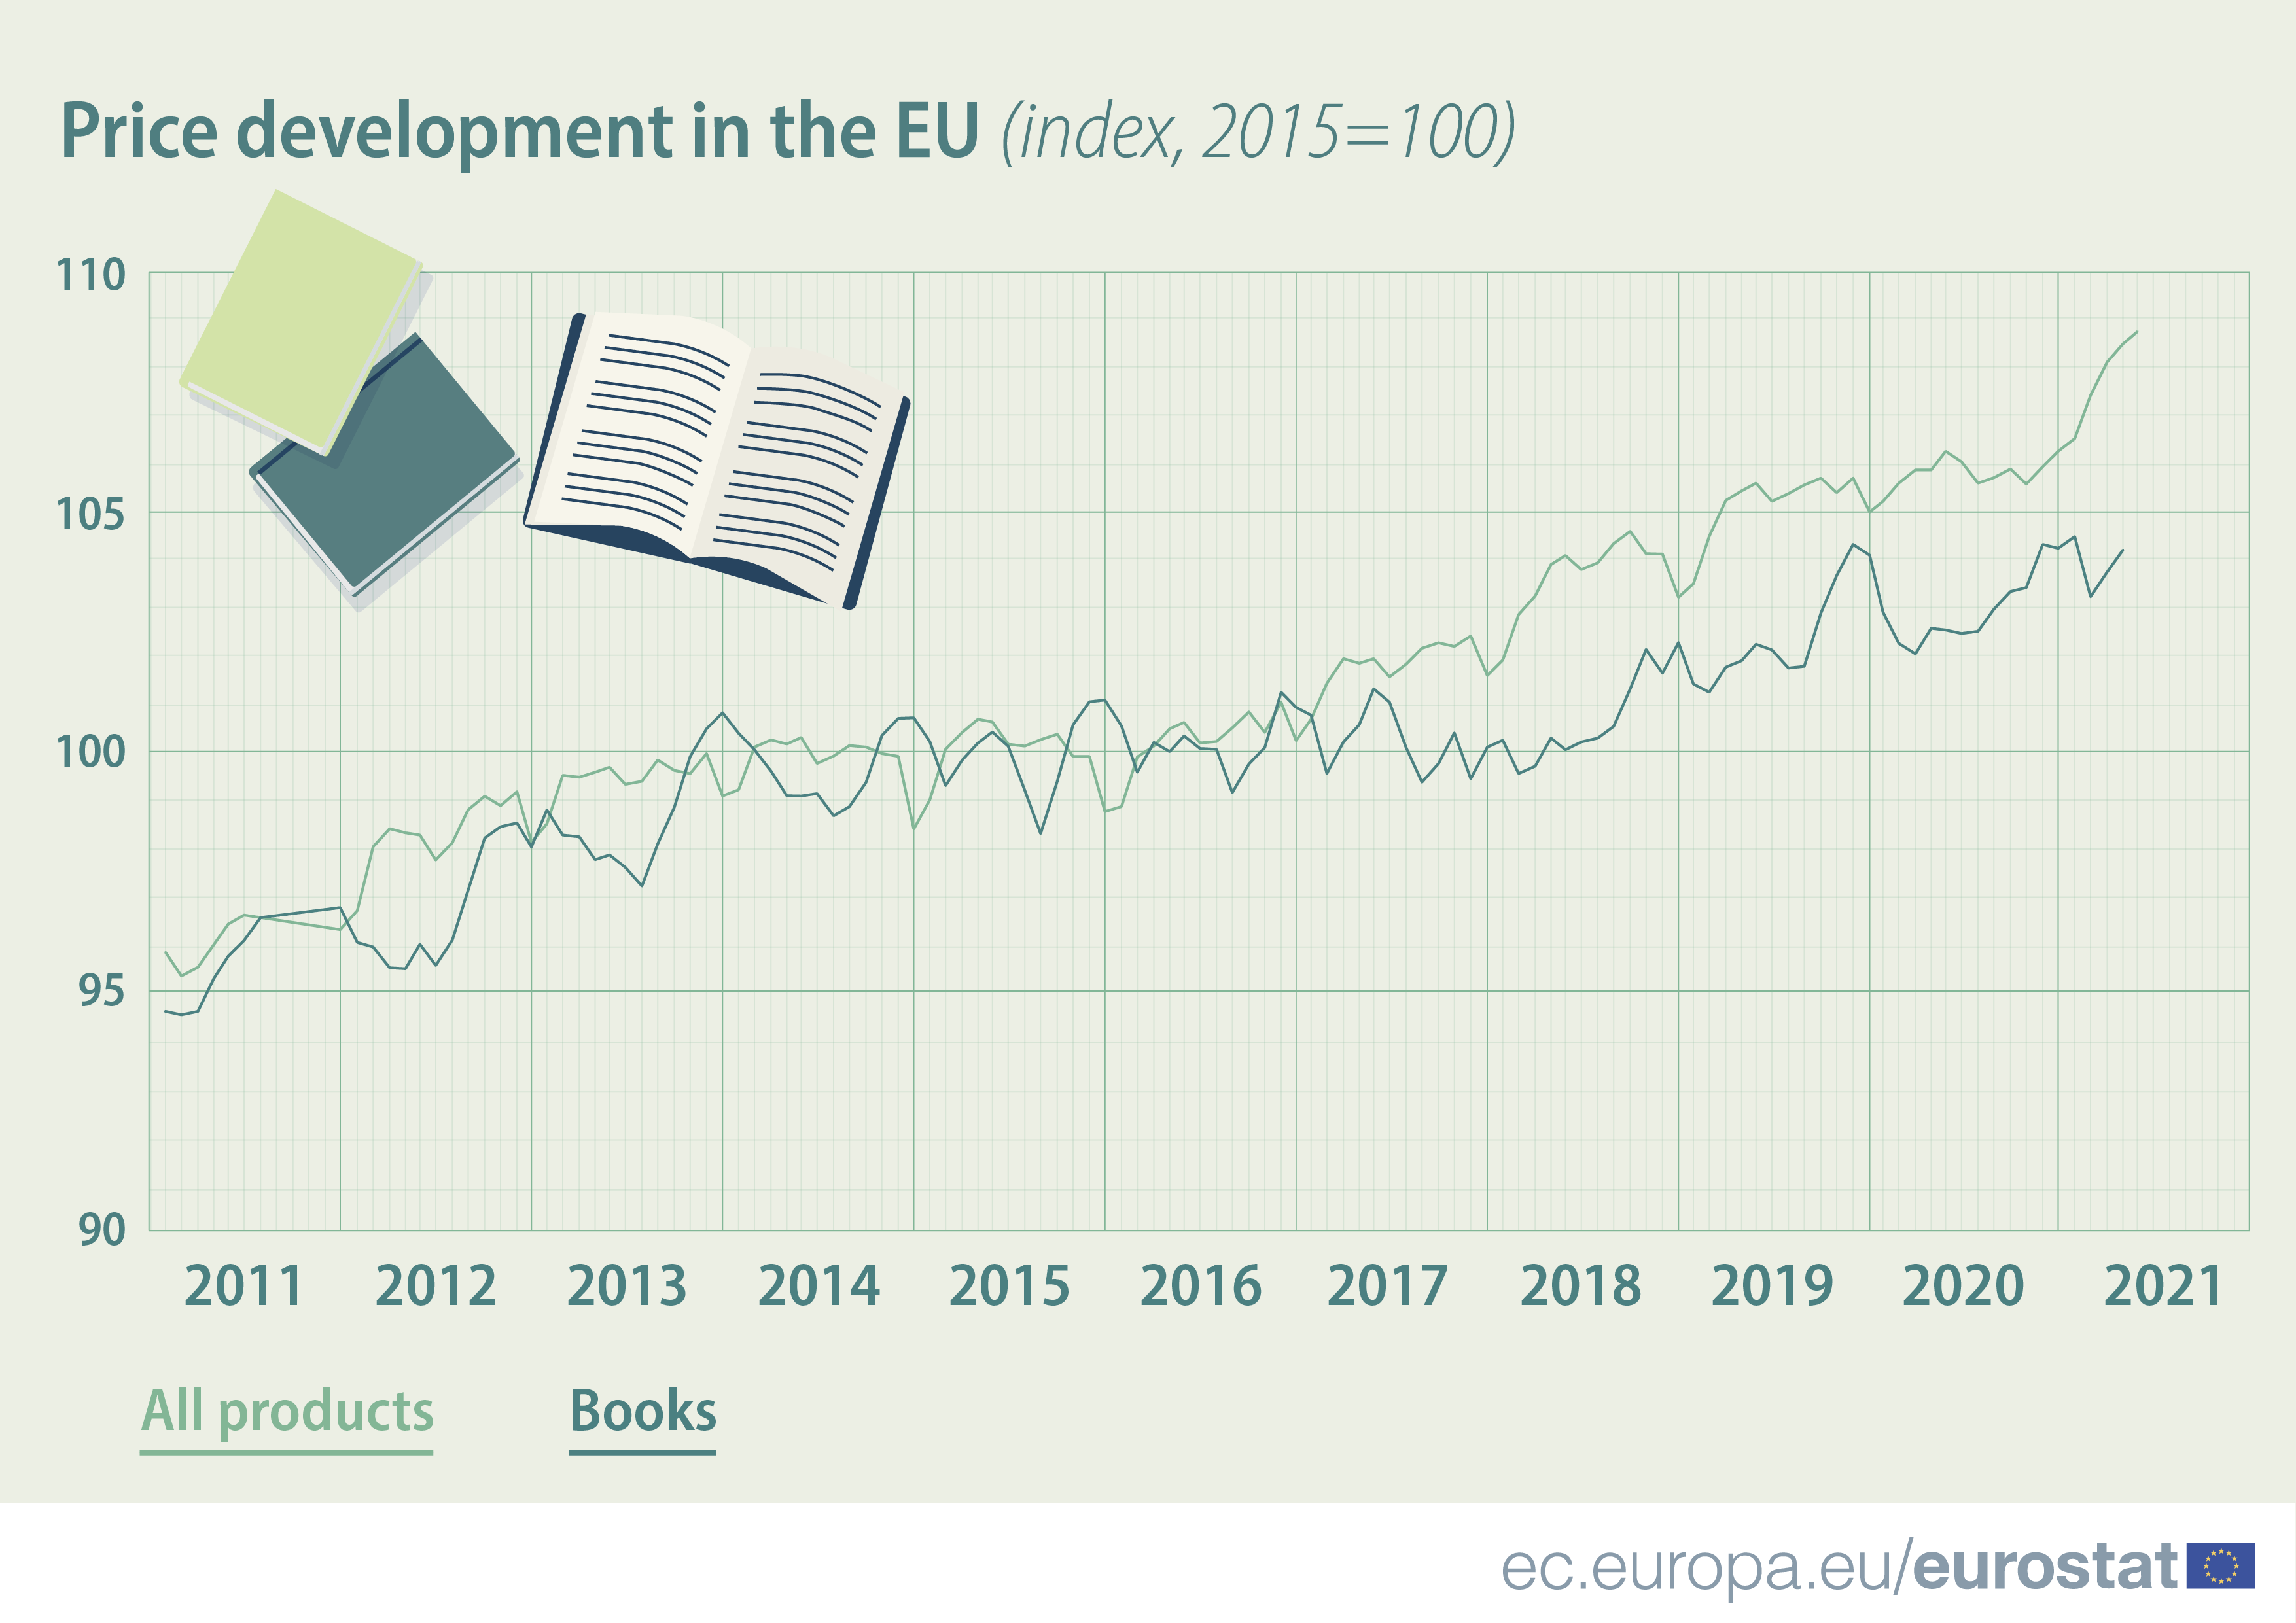 Price development in the EU, index 2015=100